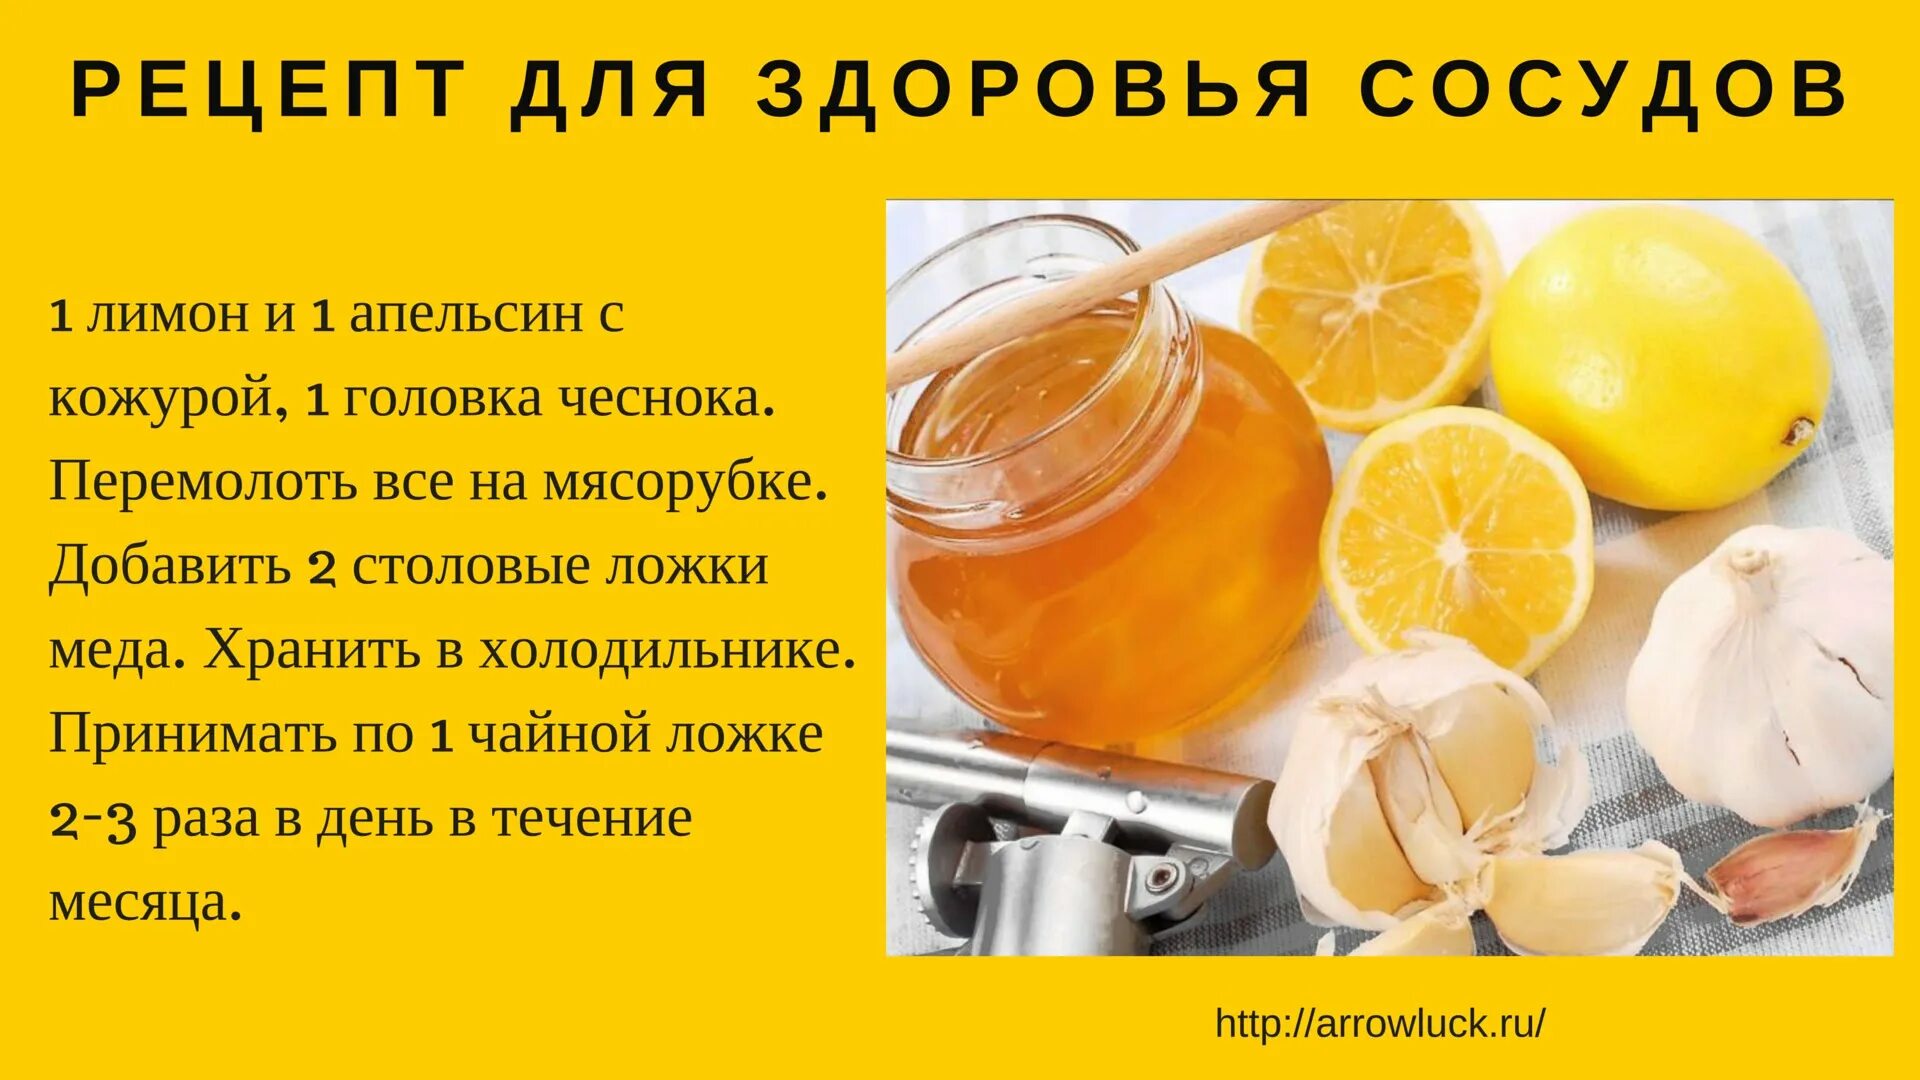 Апельсин повышает сахар. Чистка сосудов народными средствами. Народные методы чистки сосудов. Домашние средства для очищения сосудов. Рецепты для очищения сосудов.